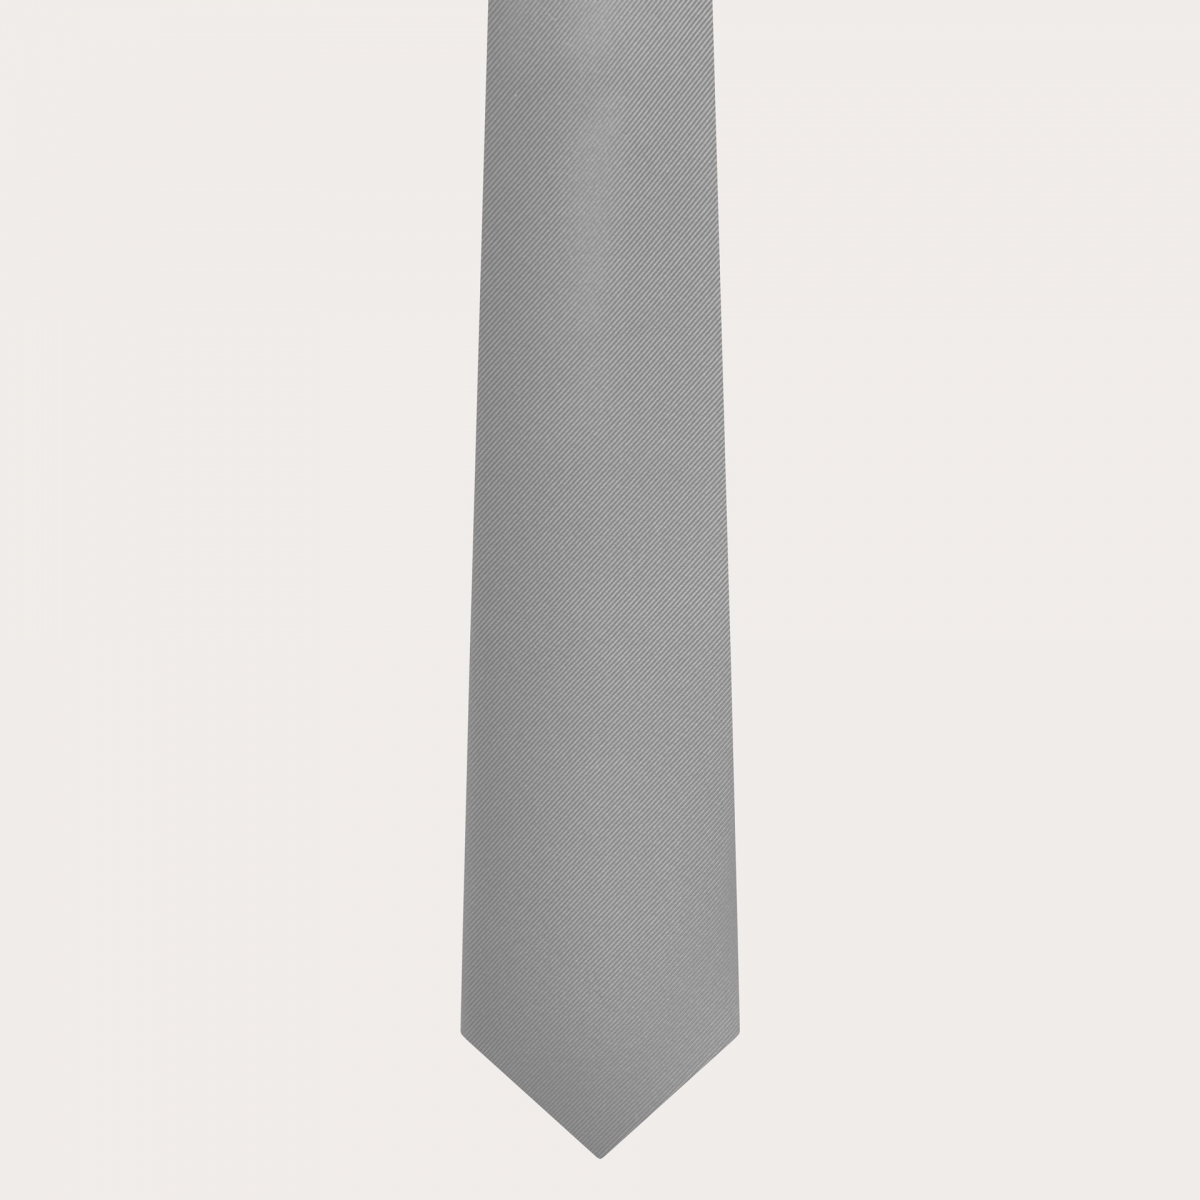 Brucle cravate artisanal gris en soie